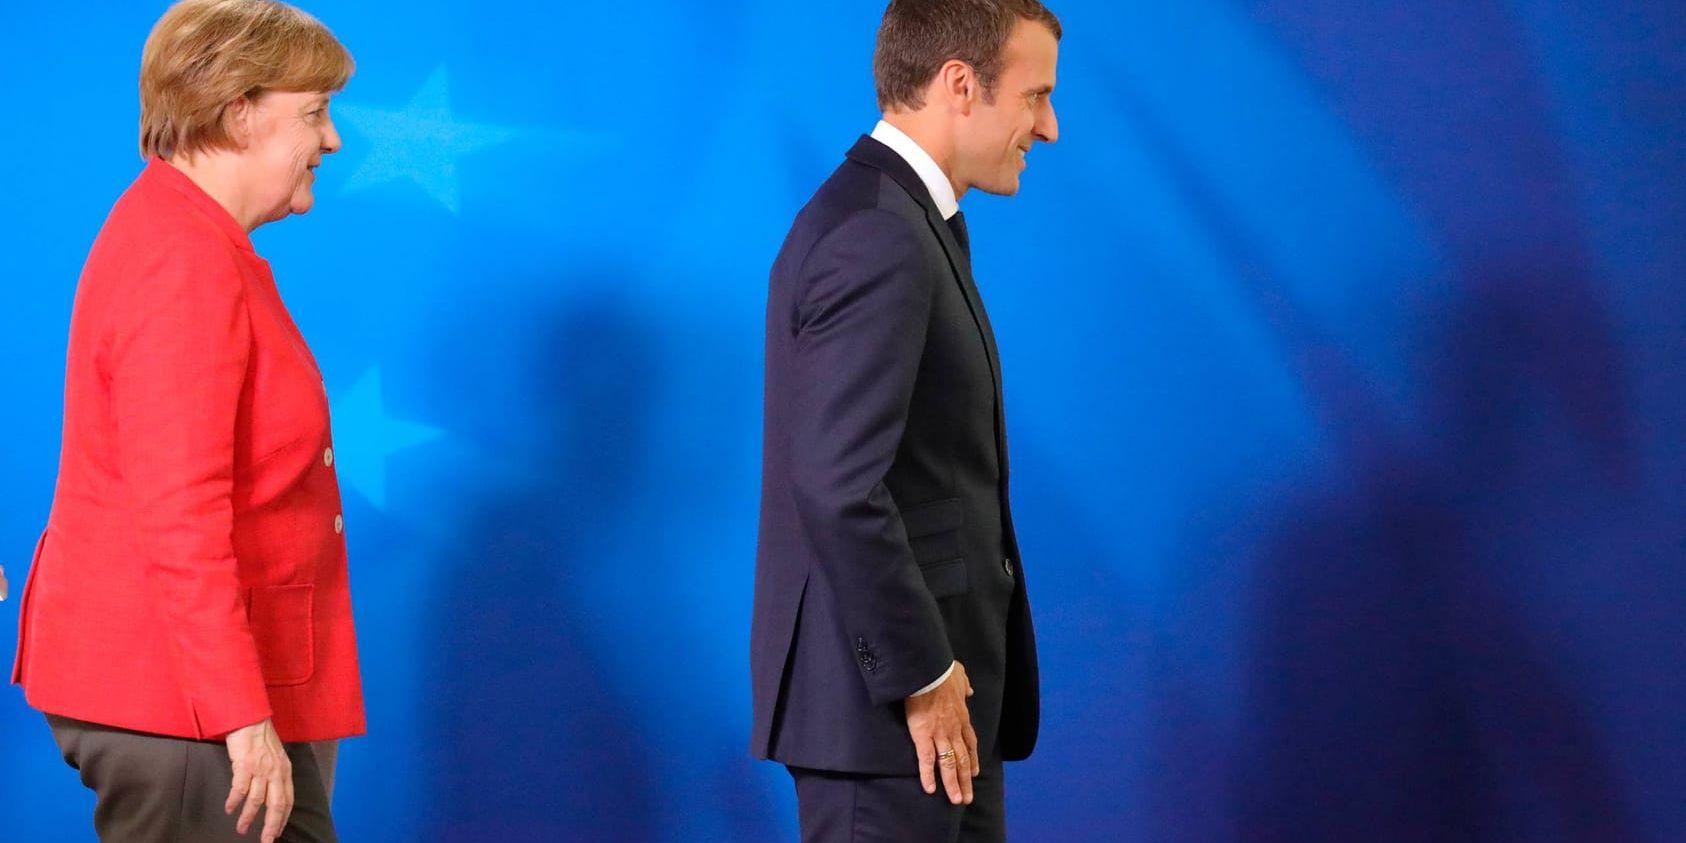 Tysklands förbundskansler Angela Merkel och Frankrikes president Emmanuel Macron kliver ner från podiet efter ett gemensamt tal vid EU-toppmötet i Bryssel.